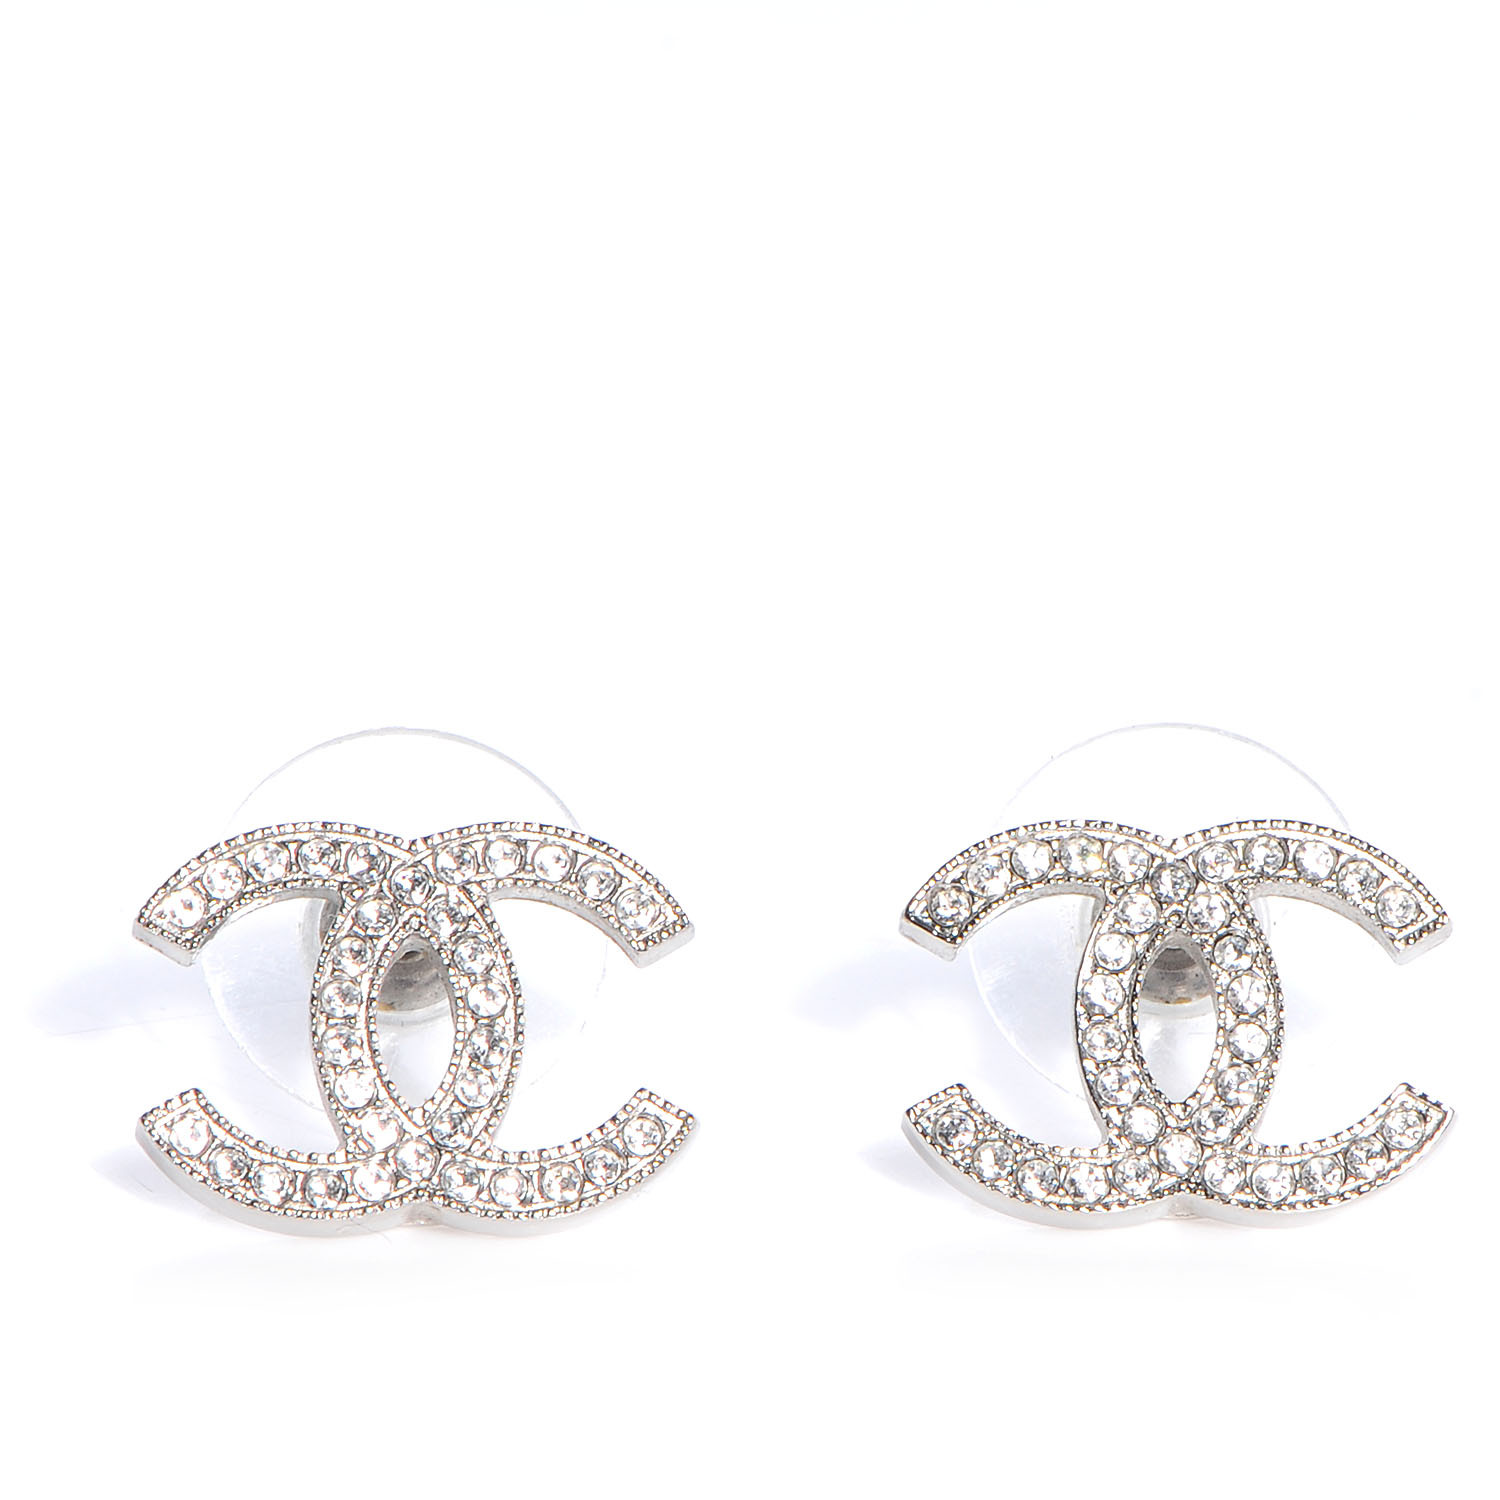 Chanel Earrings Cc
 CHANEL Crystal CC Earrings Silver